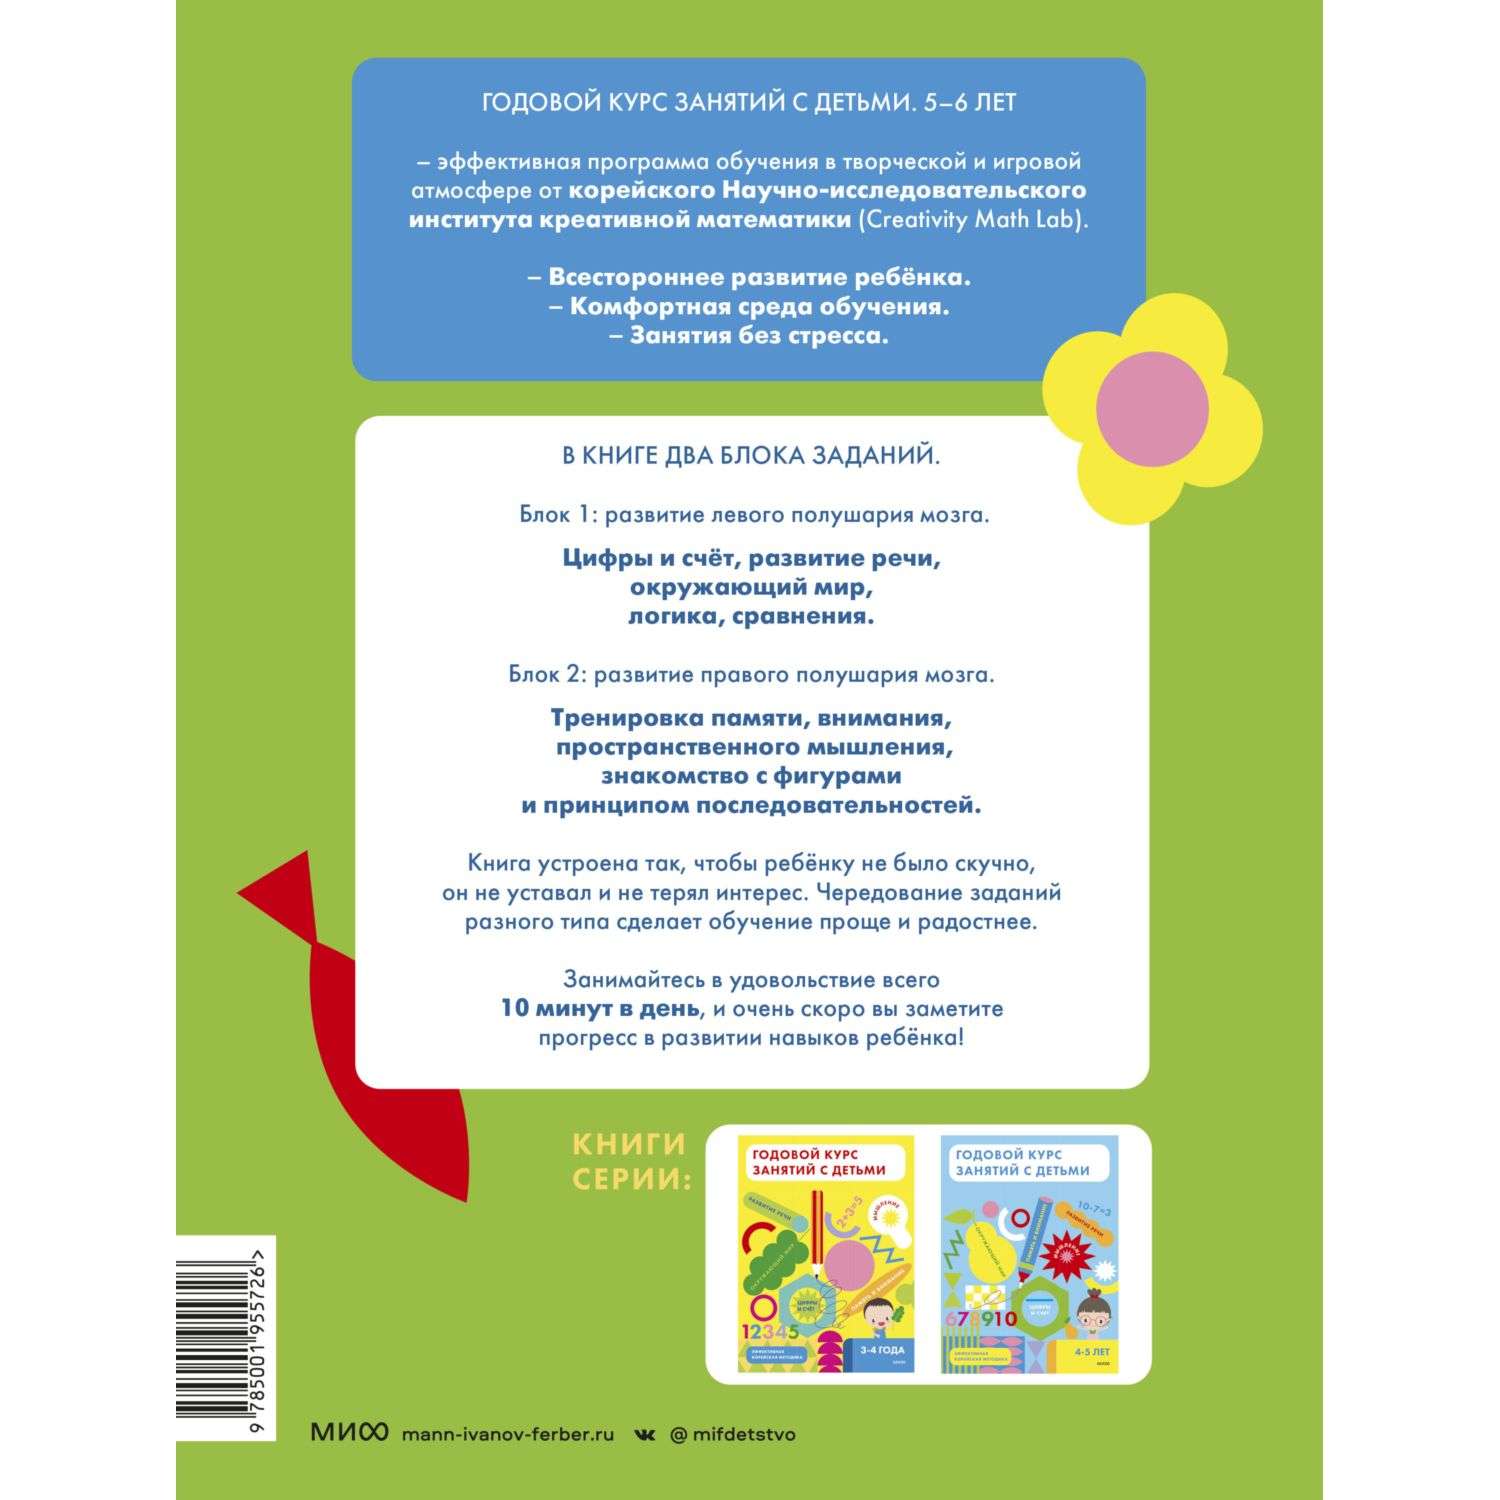 Книга Годовой курс занятий с детьми 5-6лет Creativity Math Lab Научно исследовательский институт креативной математики - фото 6